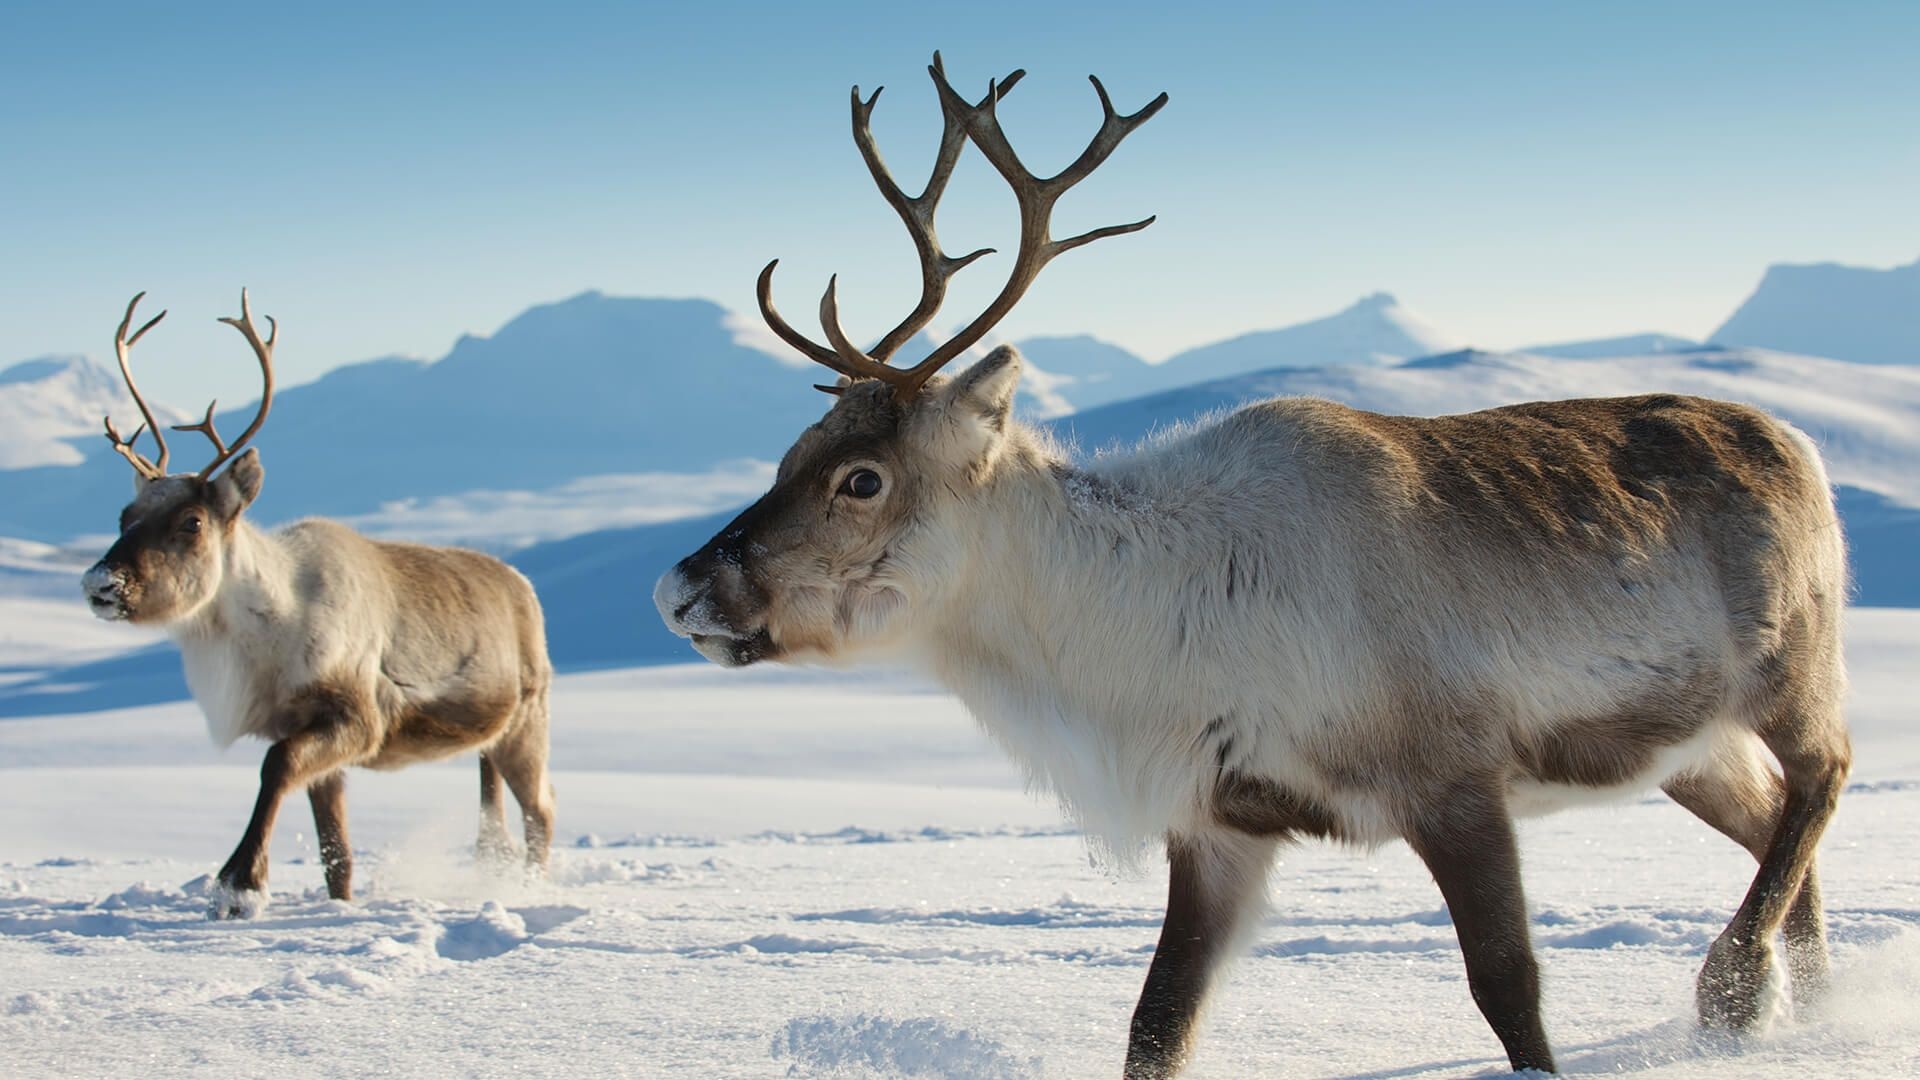 Arctic reindeer, Winter wonders, Arctic wilderness, Breathtaking beauty, 1920x1080 Full HD Desktop